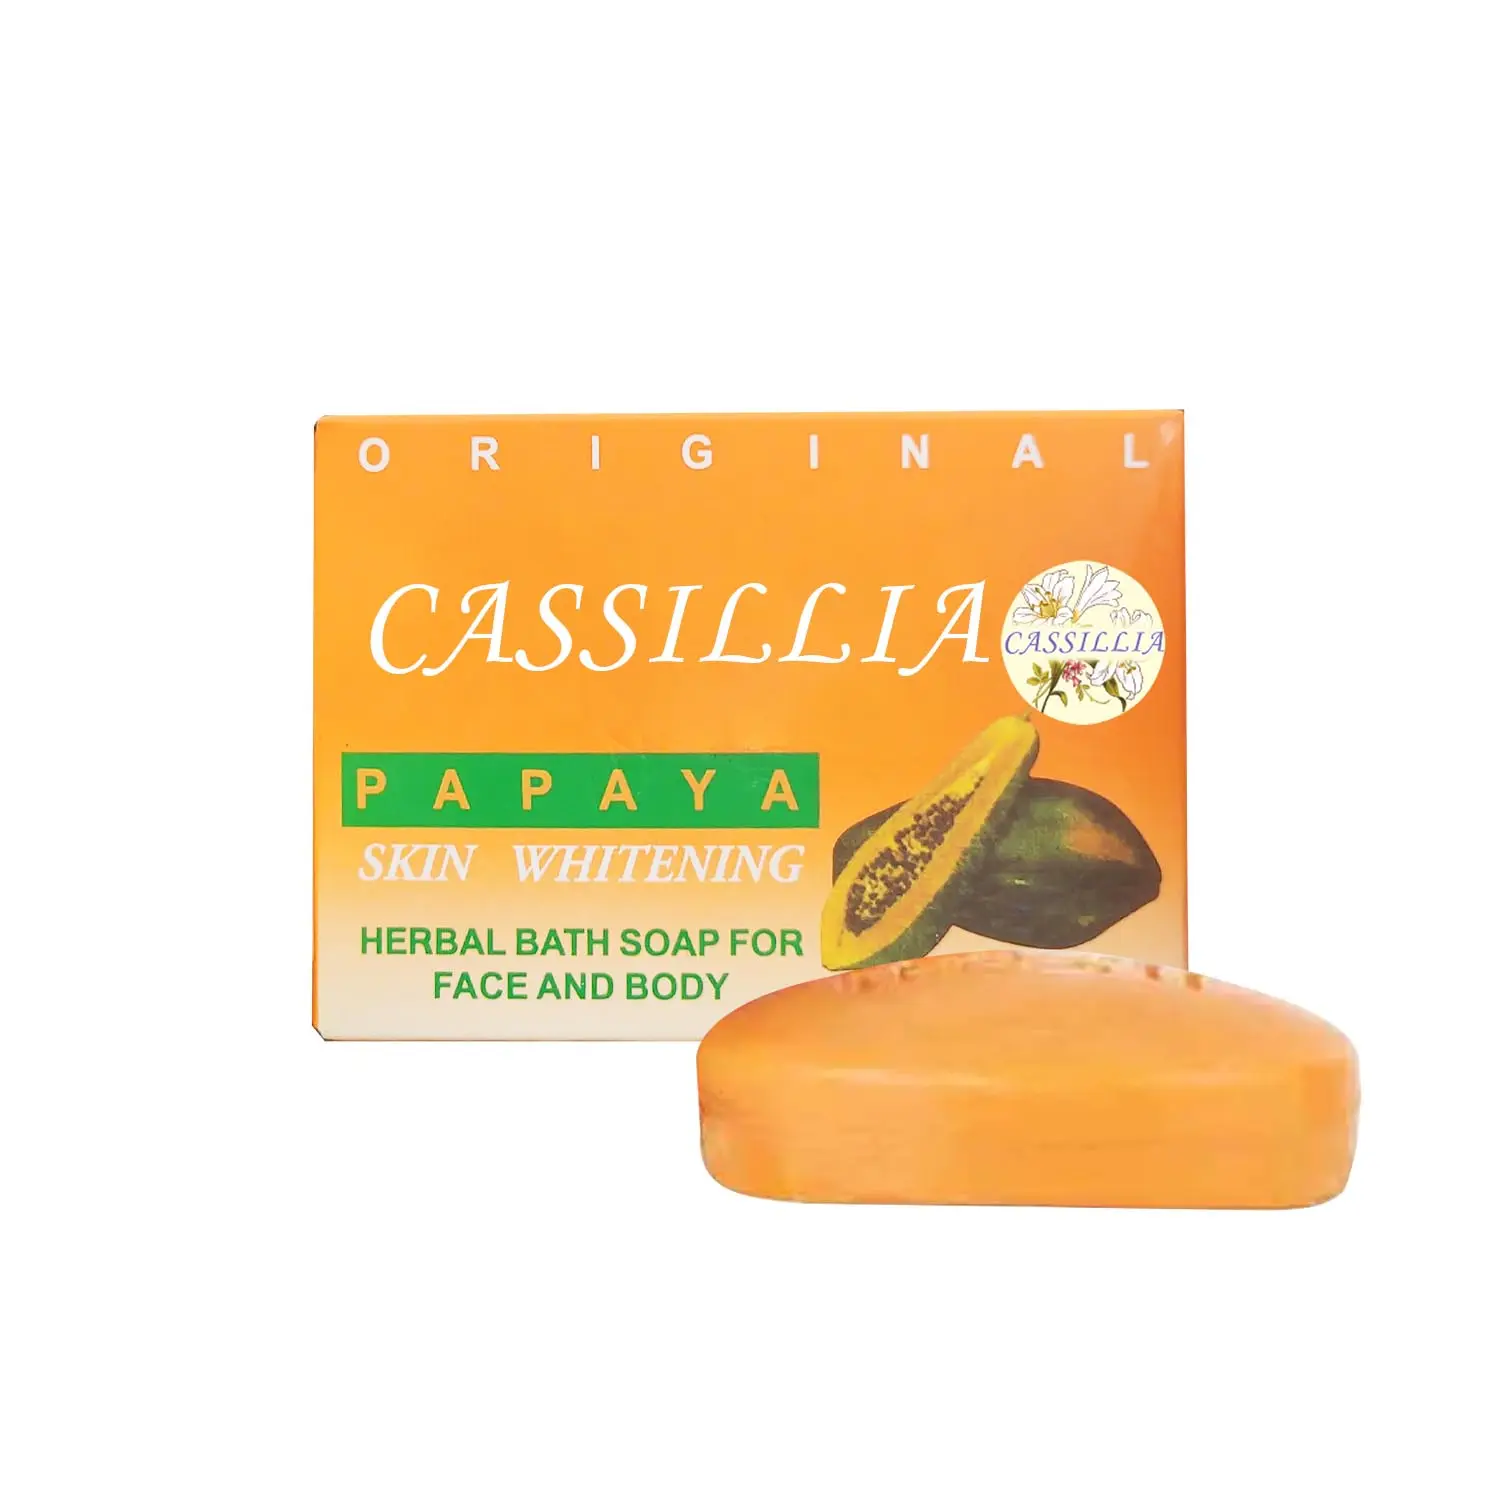 CASSILLIA set pemutih mandi jahe pepaya, sabun Label pribadi alami organik penghilang bintik hitam wortel untuk pemutih kulit